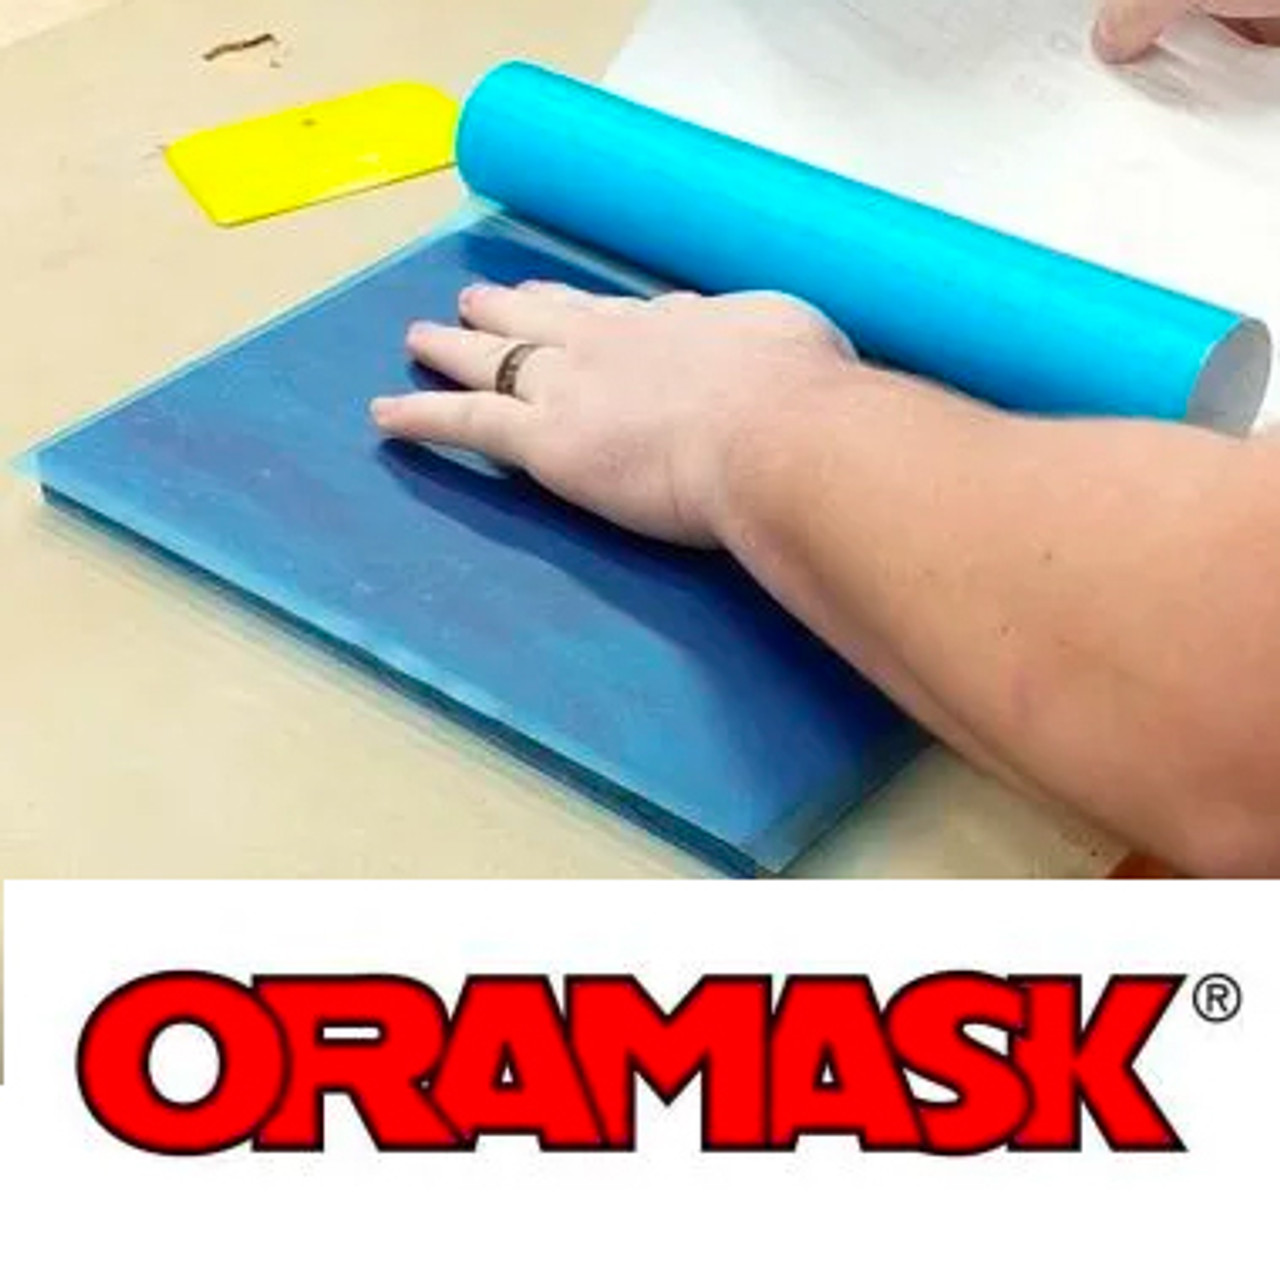 Oracal ORAMASK 813 Stencil Vinyl (12 x 12 (12 Pack))